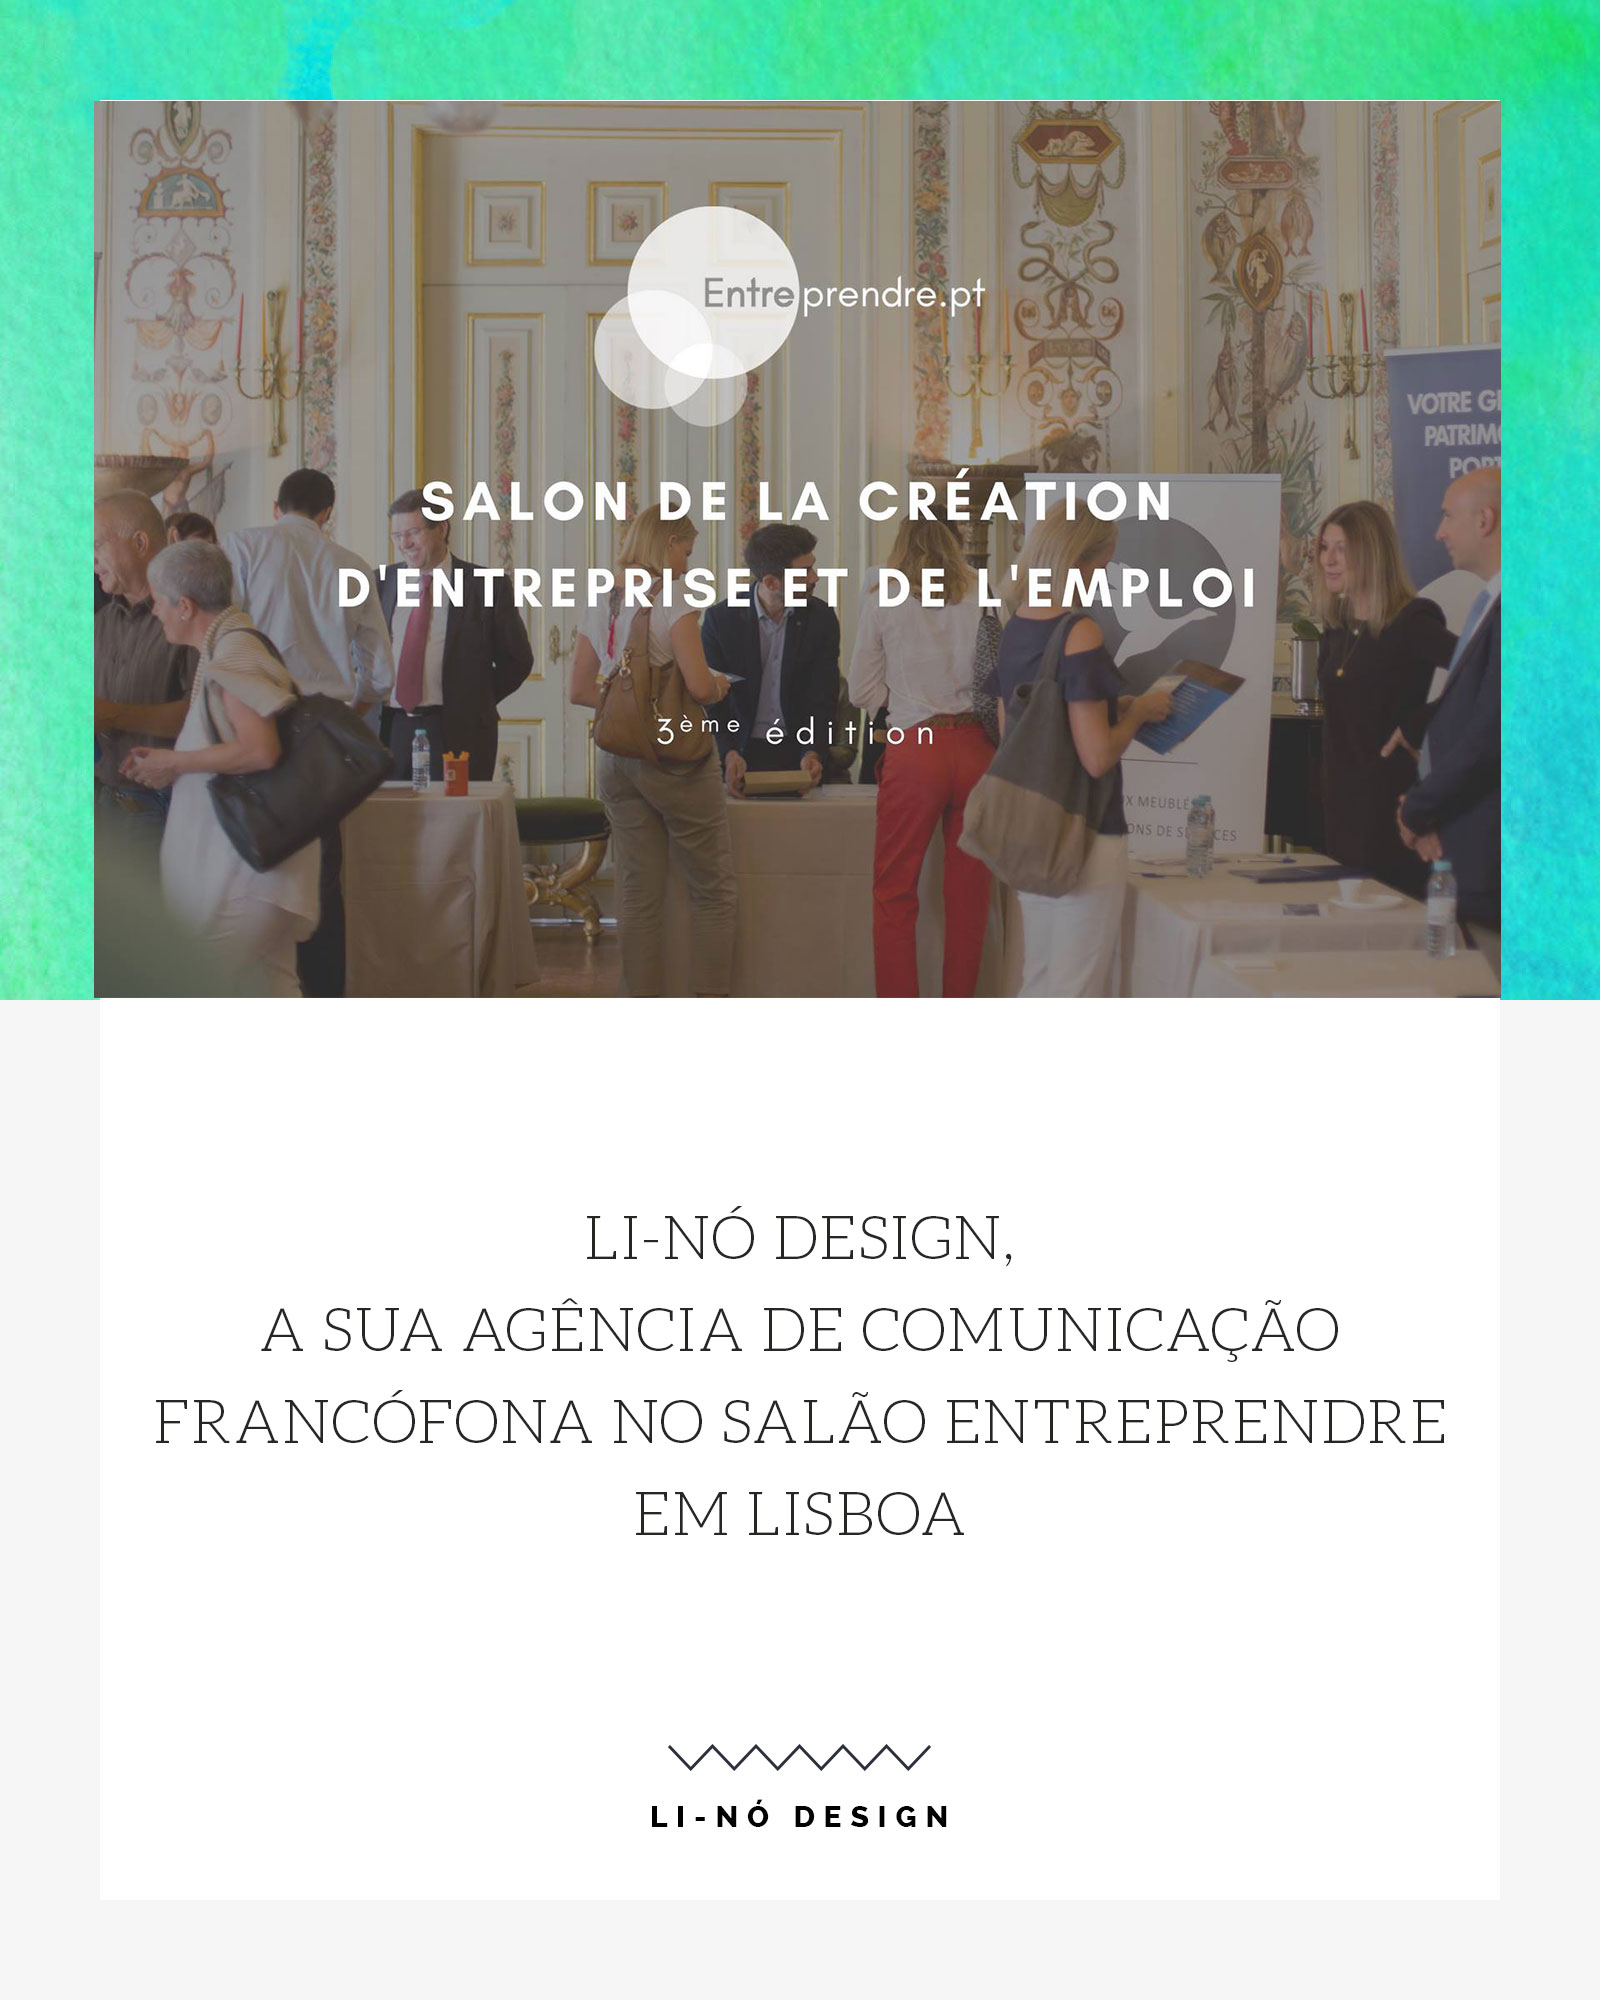 Li-Nó Design, a sua Agência de Comunicação Francófona no Salão Entreprendre em Lisboa